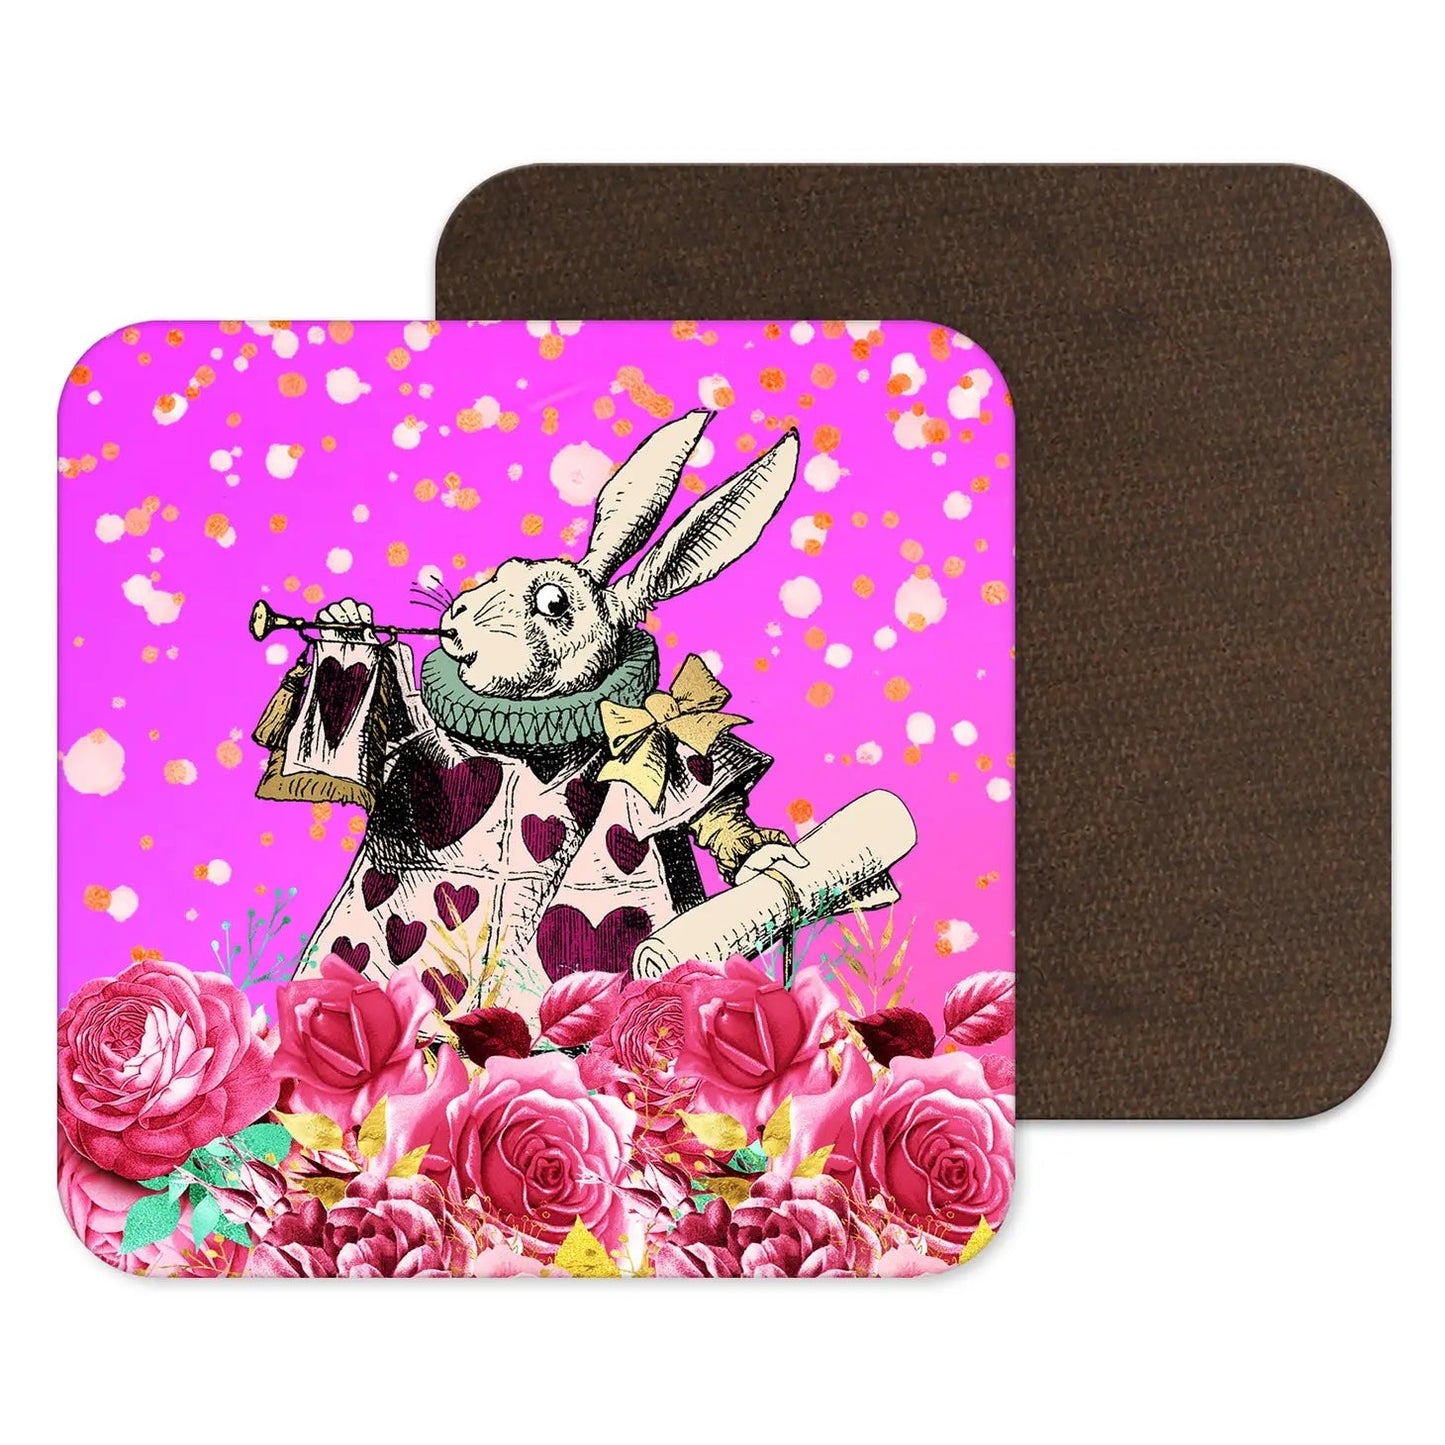 Coaster: Alice in Wonderland Pink Rabbit